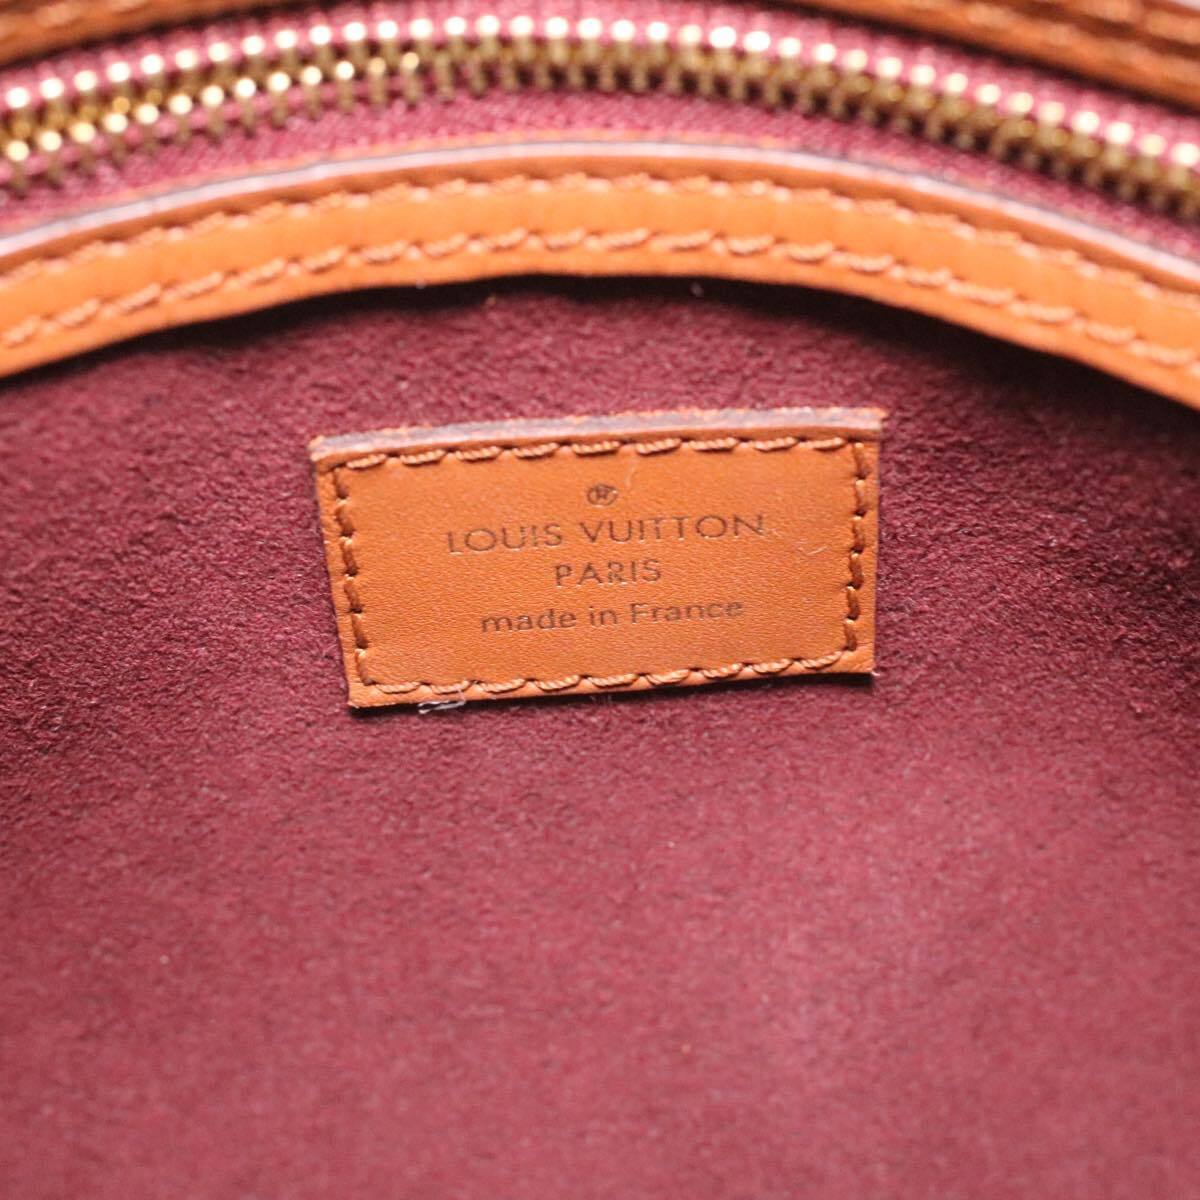 Louis Vuitton Red Jacquard Since 1854 Speedy Bandoulière 25 Bag